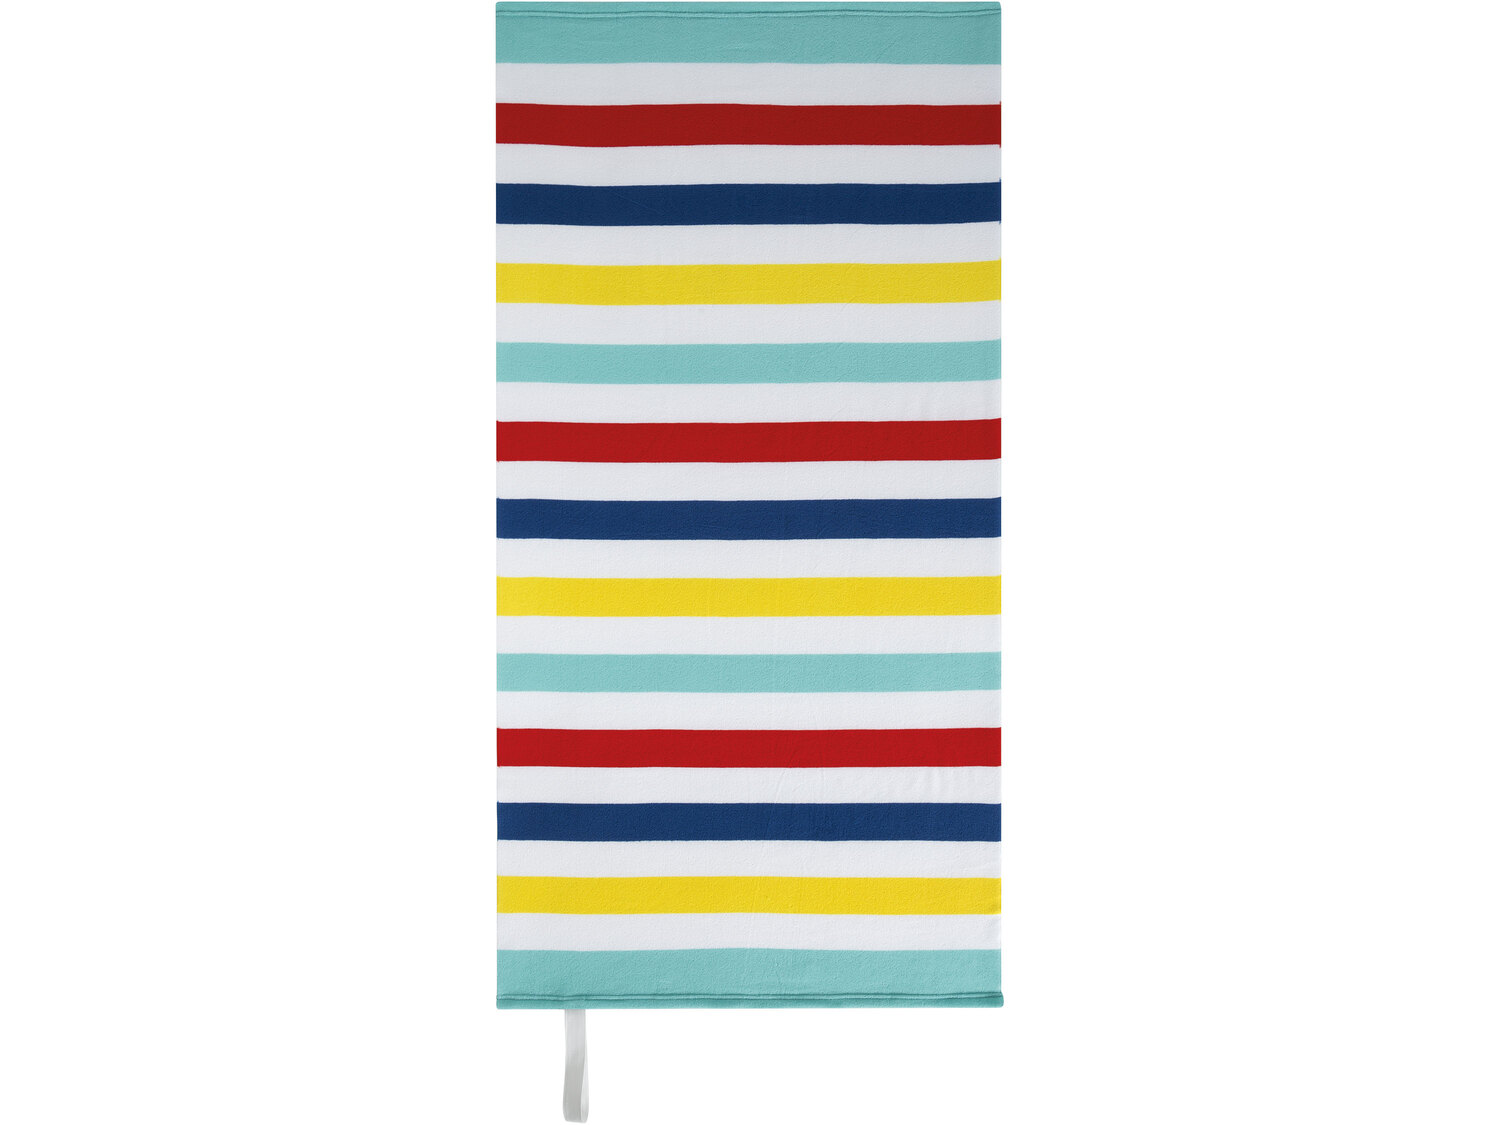 Ręcznik plażowy 75 x 150 cm Crivit, cena 14,99 PLN 
4 wzory 
- miękki i szybkoschnący
- ...